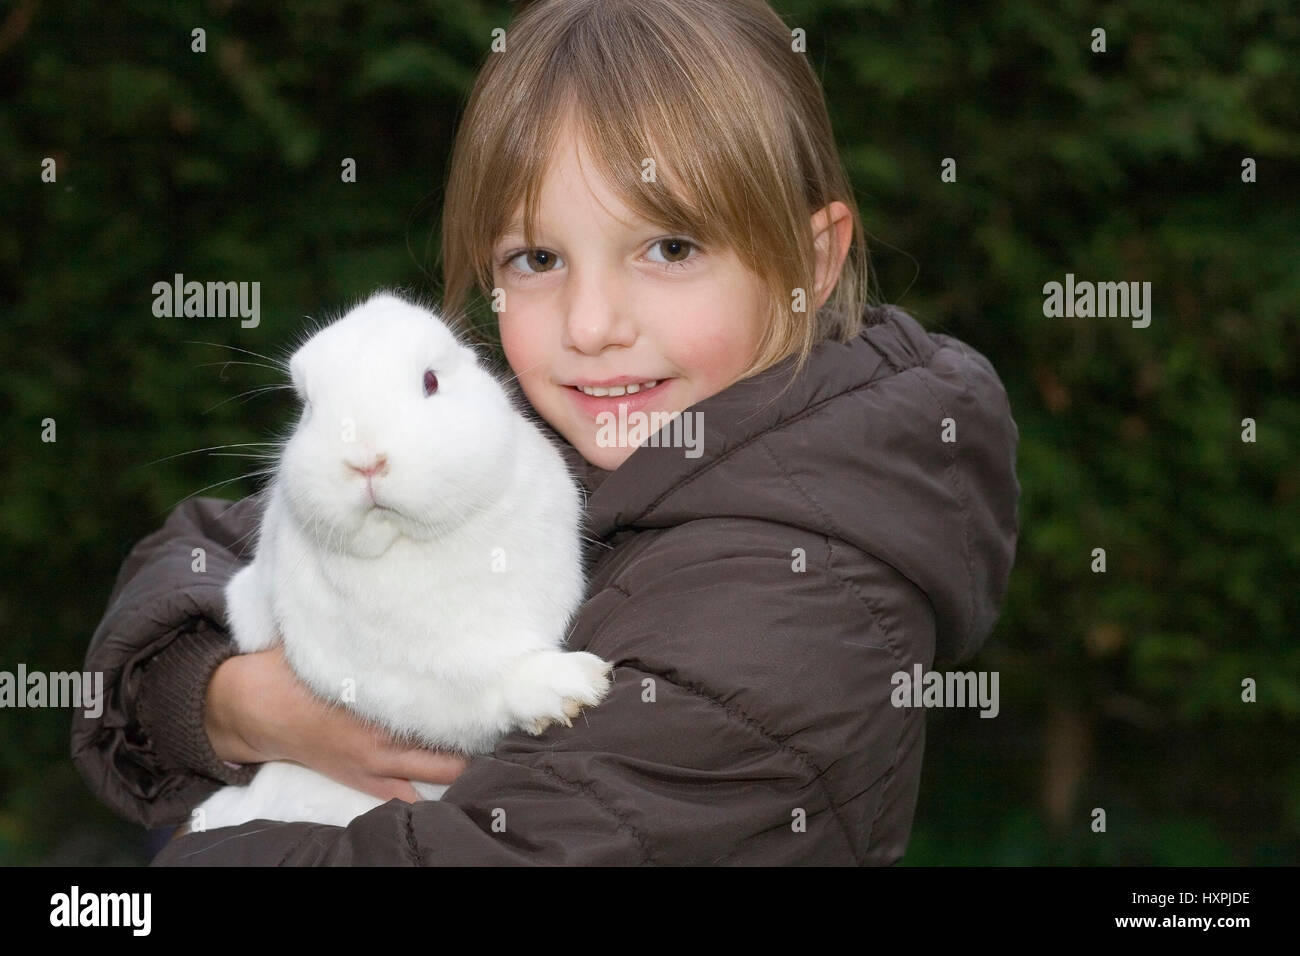 five-year-old girl with an albino's hare (mr), fünfjähriges Mädchen mit einem Albino-Hasen (mr) Stock Photo